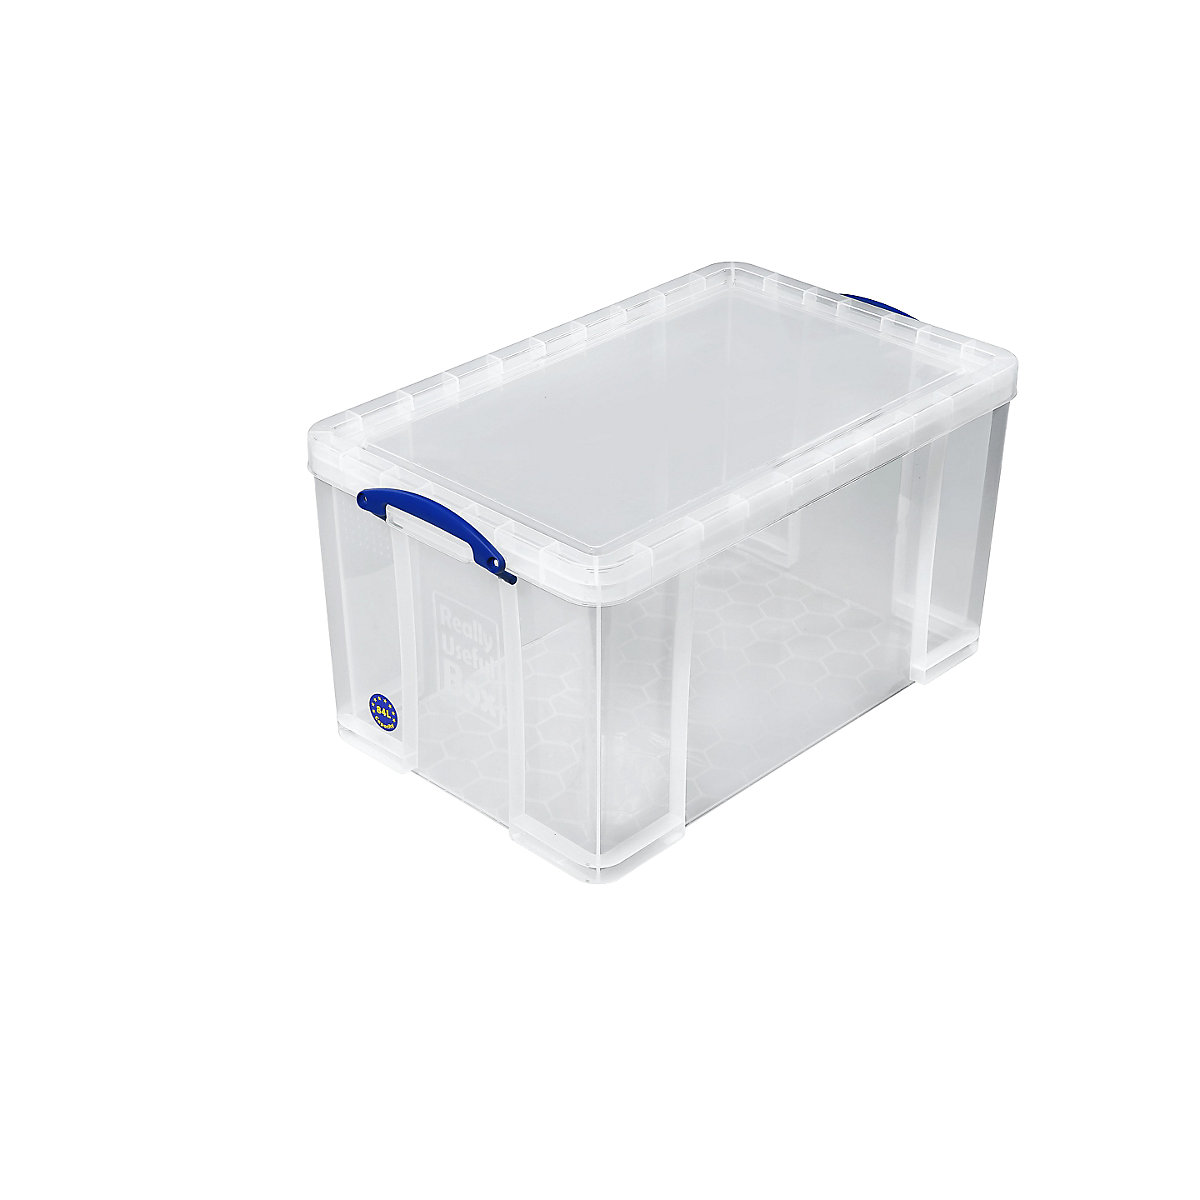 Stohovací box REALLY USEFUL, s víkem, objem 84 l, d x š x v 710 x 440 x 380 mm-11